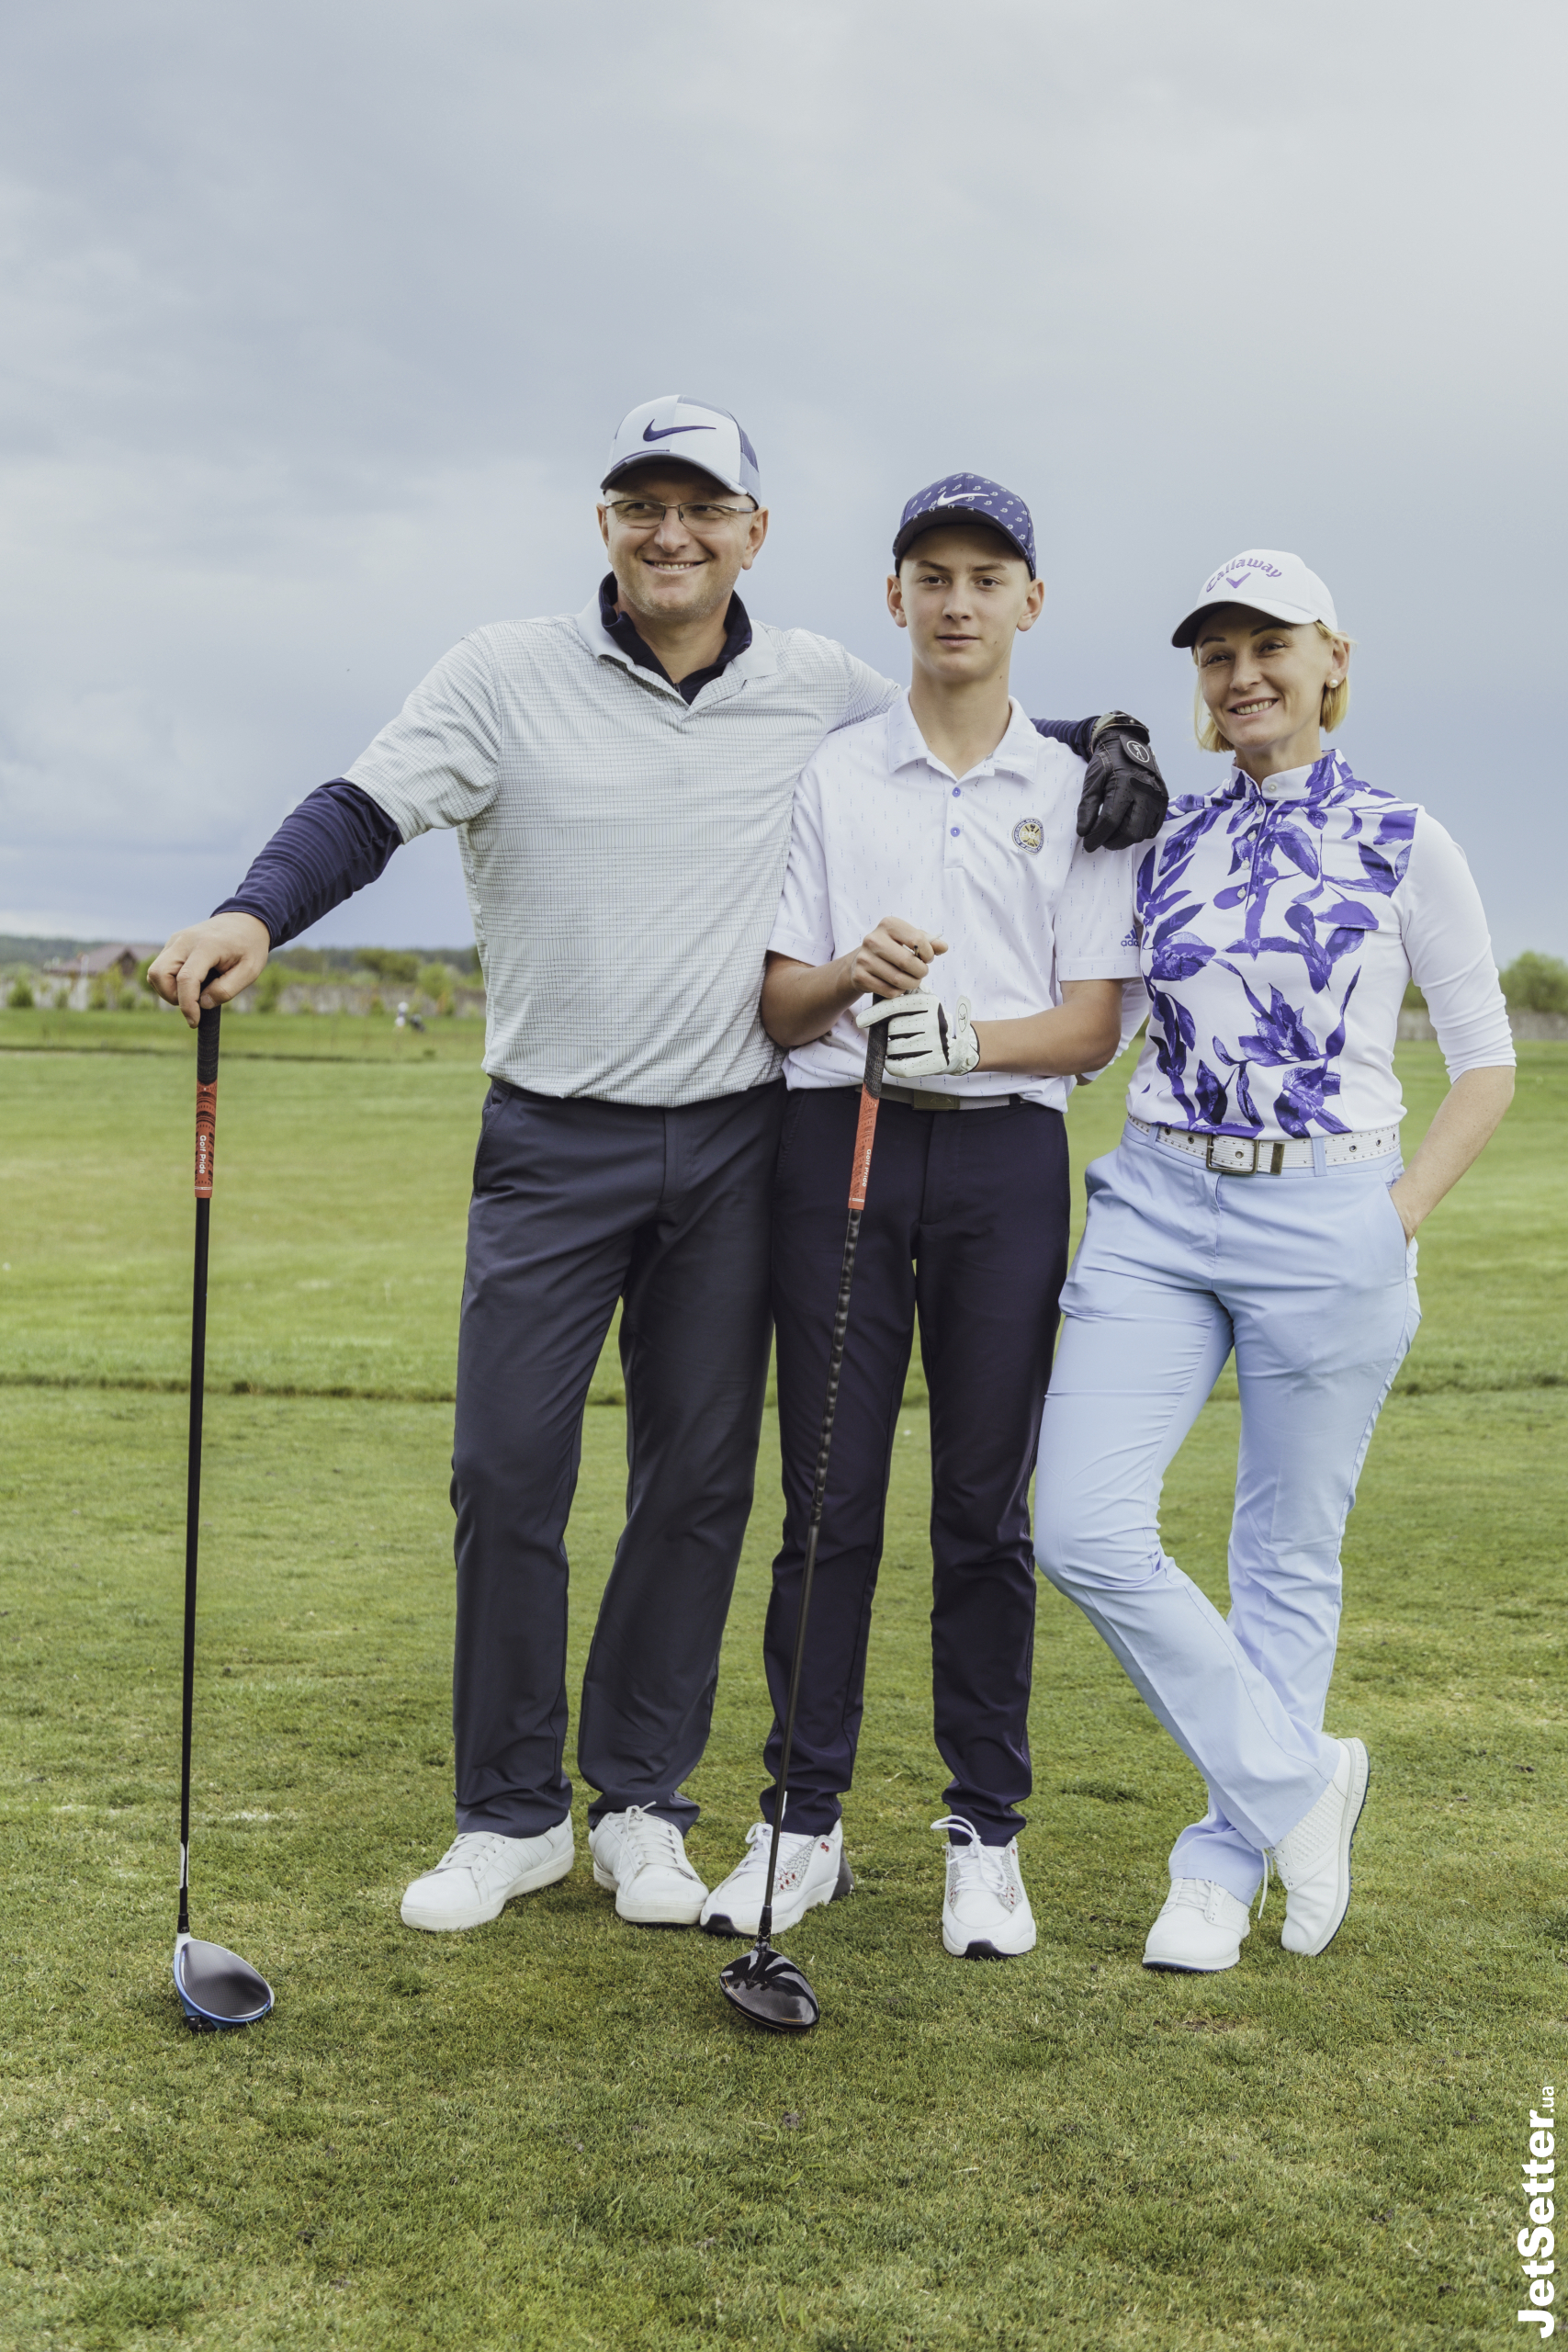 Вишукана розкіш гольфу: в Україні вдруге відбувся LUJO Golf Trophy